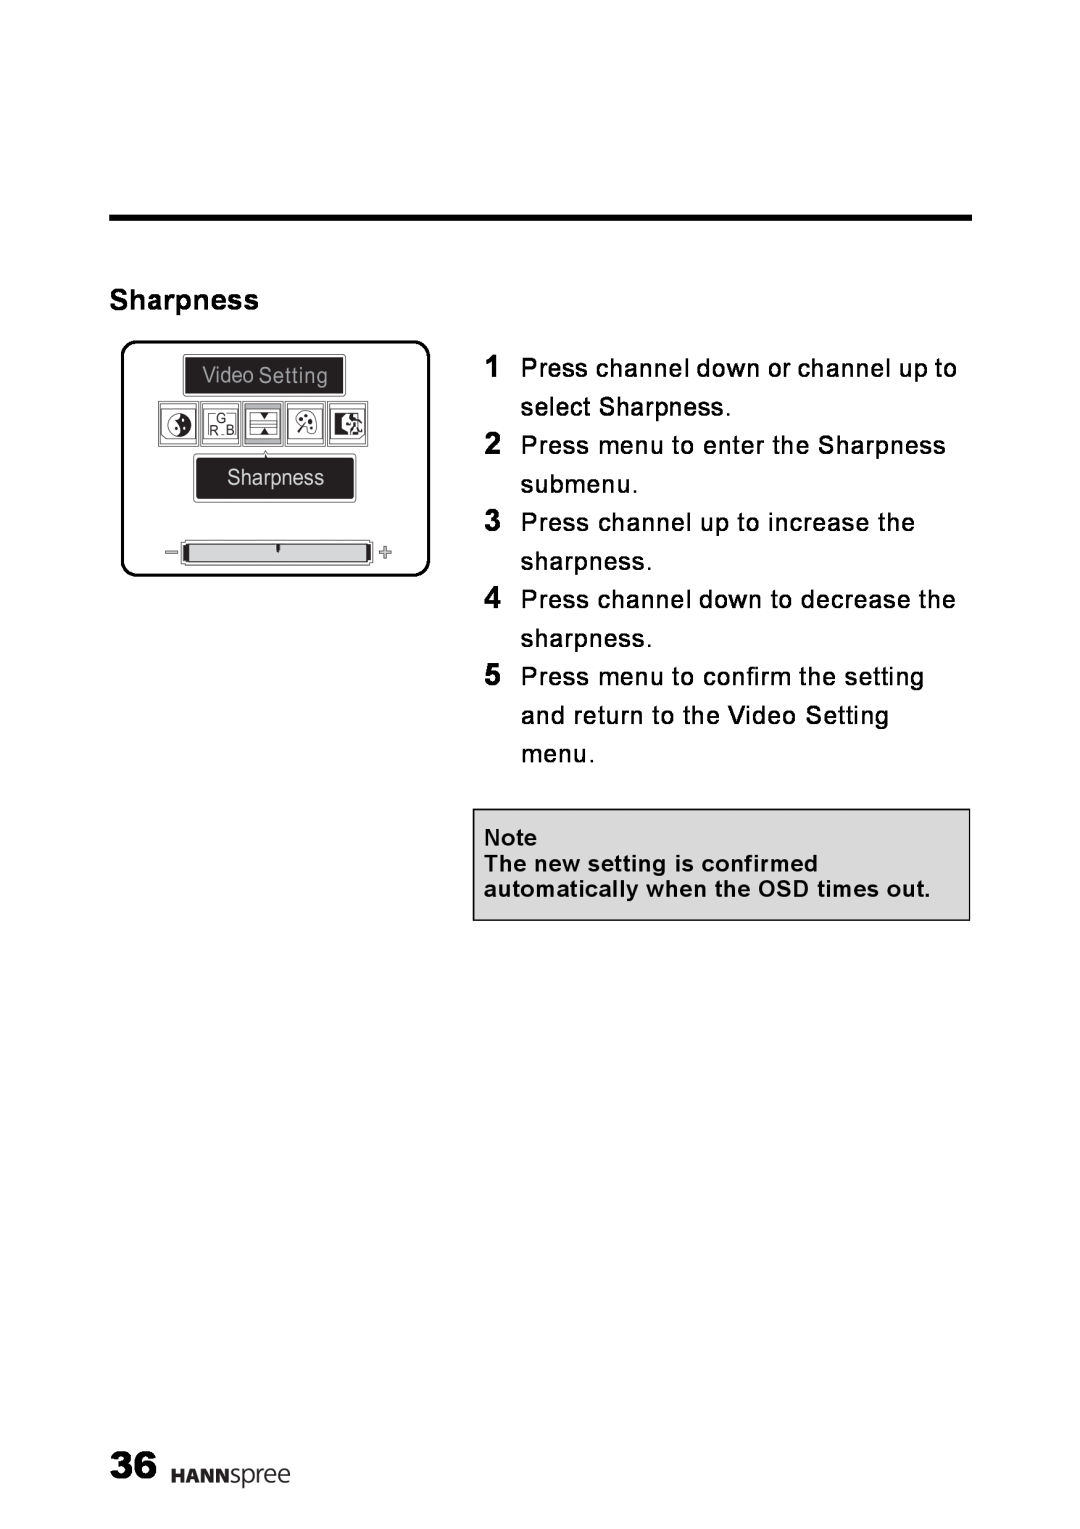 HANNspree LT09-10U1-000 user manual Sharpness, Video Setting, G R B 